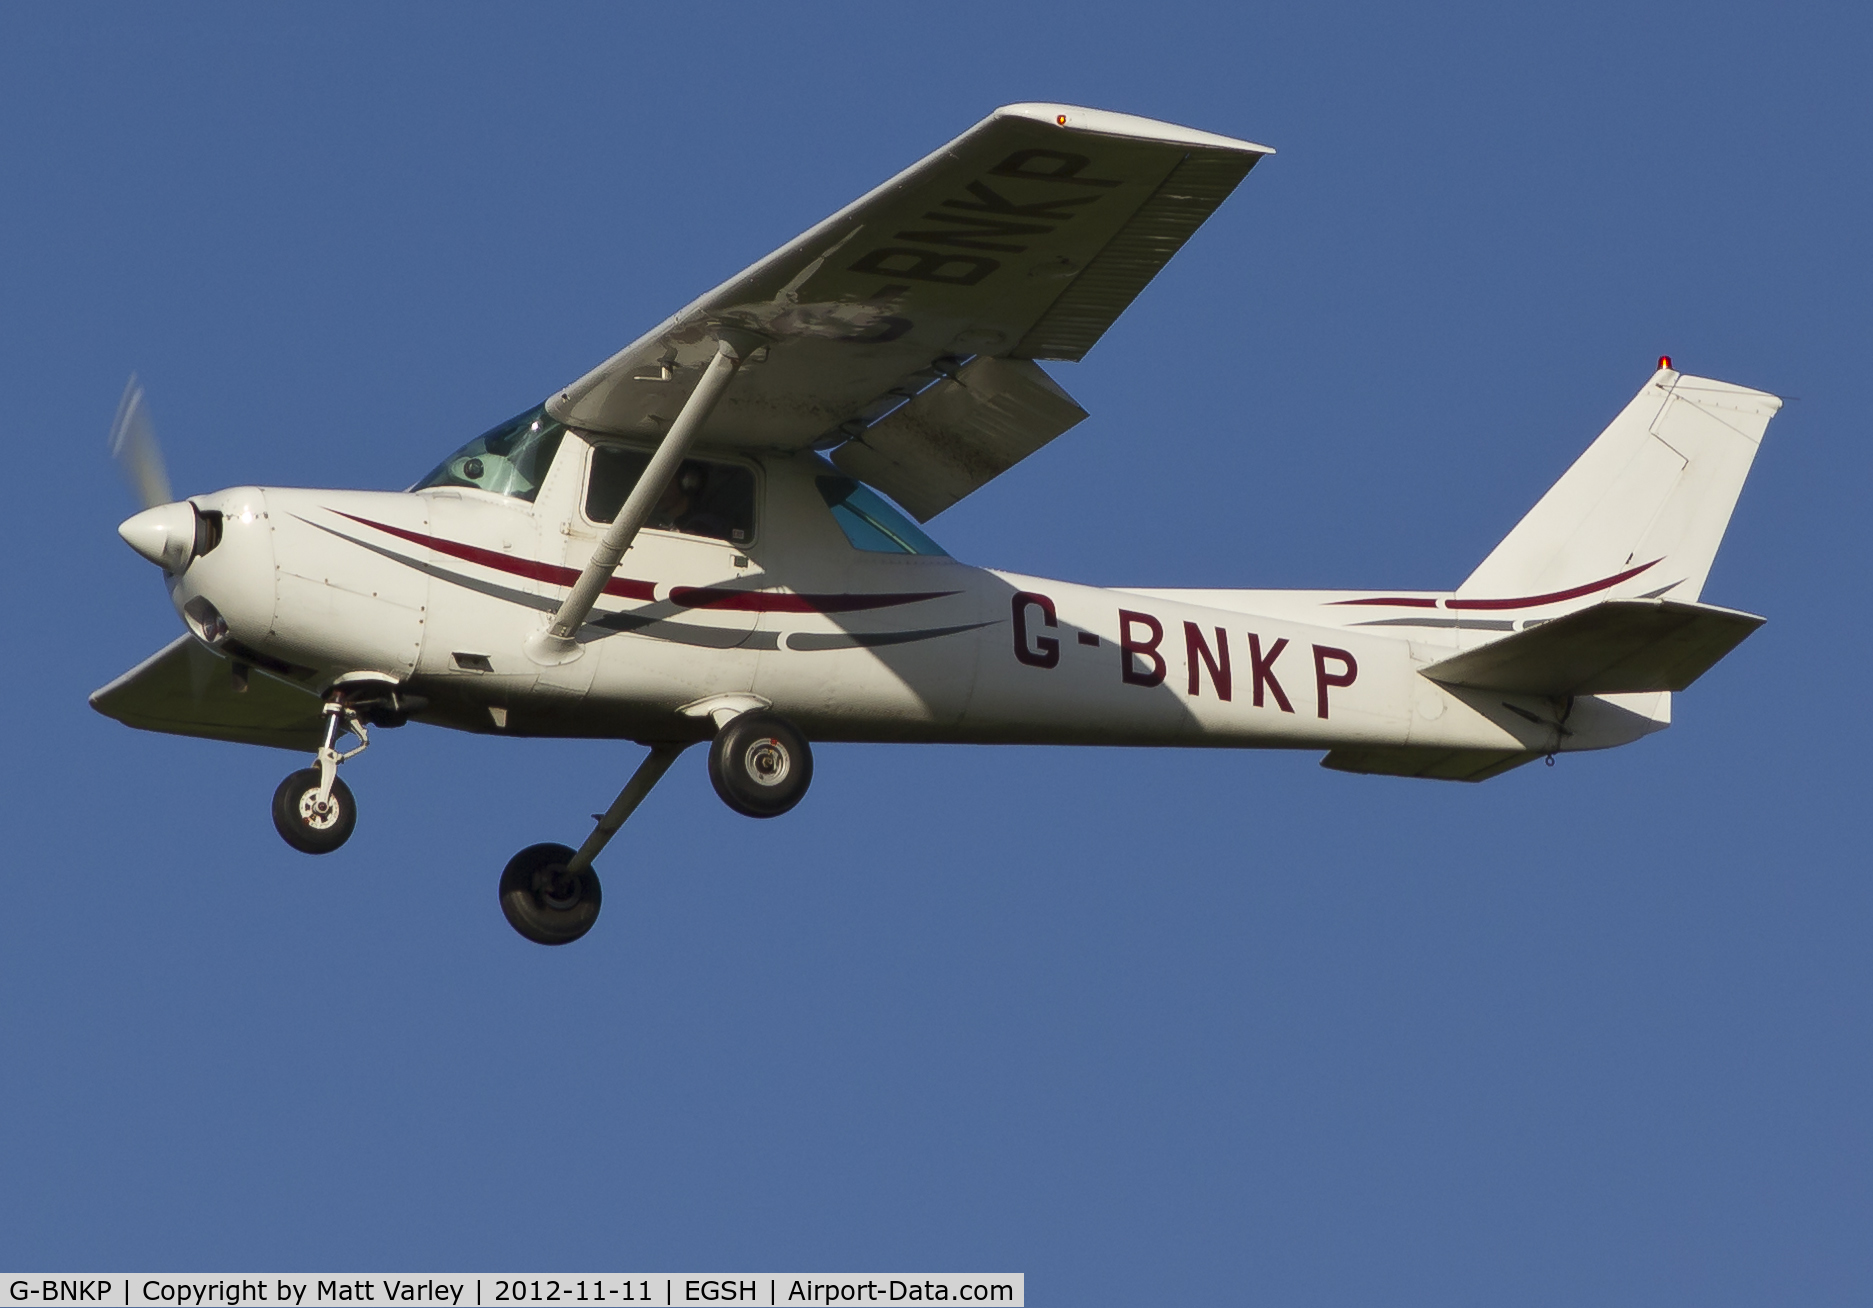 G-BNKP, 1978 Cessna 152 C/N 152-81286, Arriving at EGSH.